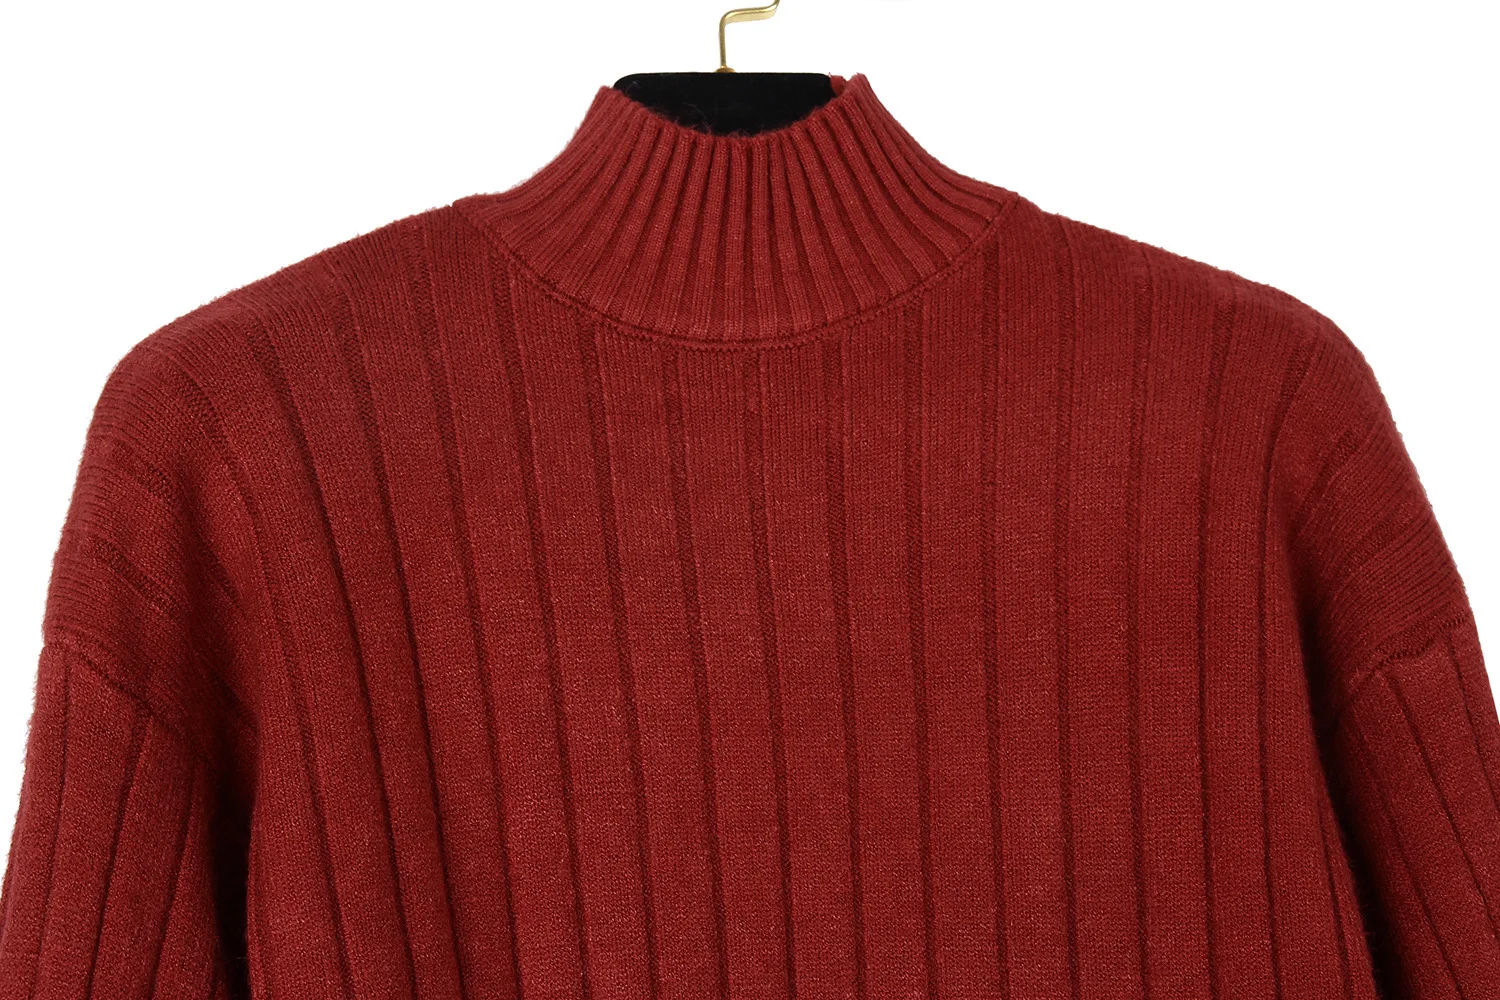 Зимний вязаный свитер с высоким воротом для женщин осенний Повседневный вязаный пуловер с длинным рукавом Эластичный свитер Топы ropa mujer